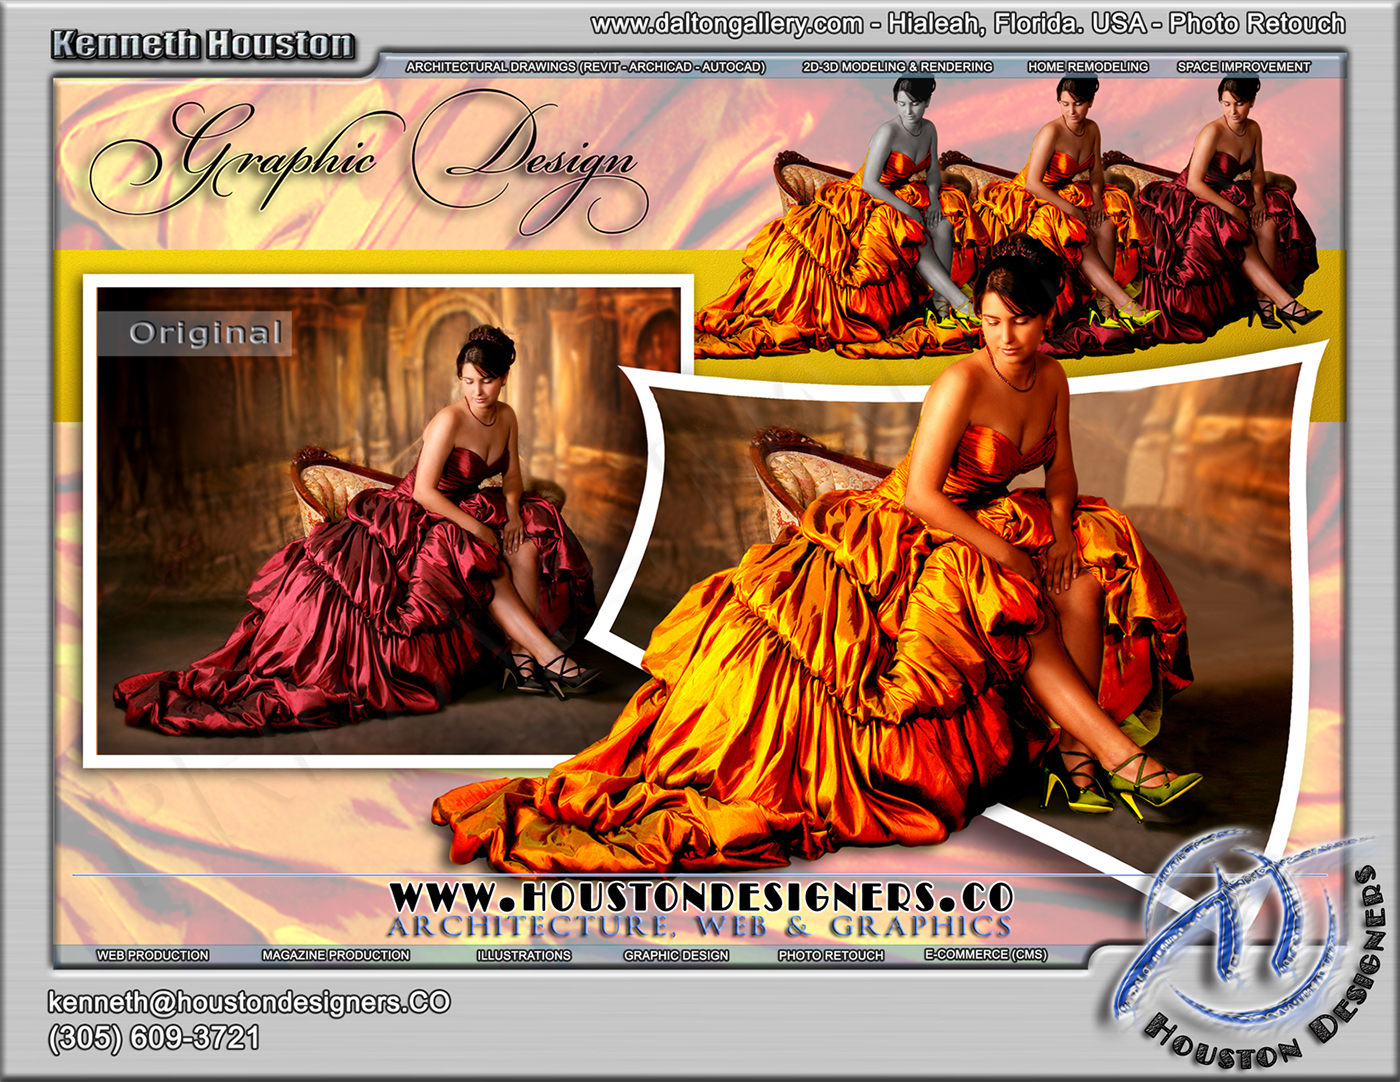  photoshop  retouch  Illustration  web design corel draw x4 Revit Architecture